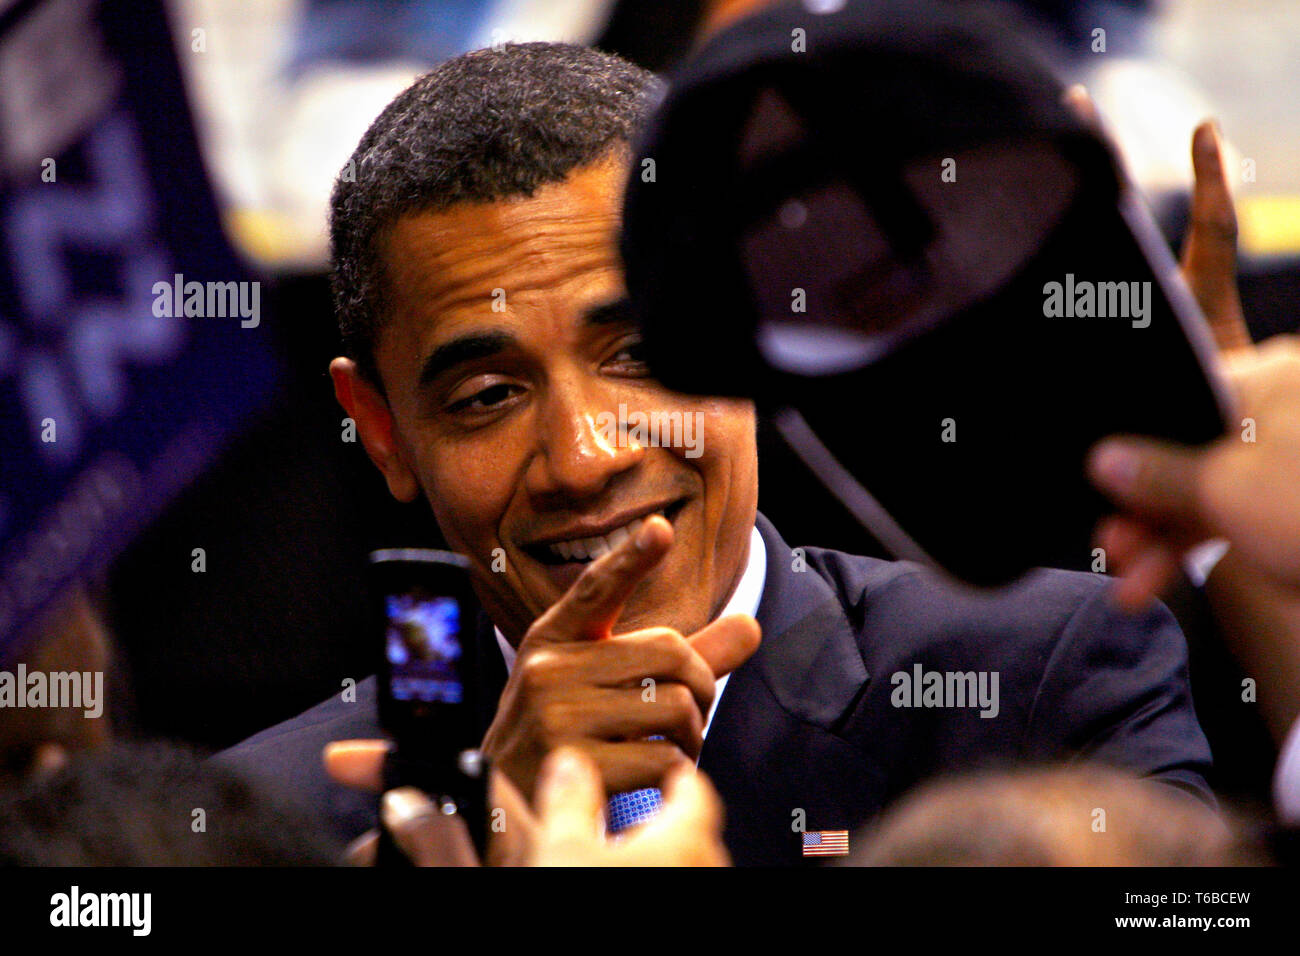 La présidence Barak Obama (D) maintient au speach St Pete Times Forum à Saint-Pétersbourg / Tampa. Banque D'Images